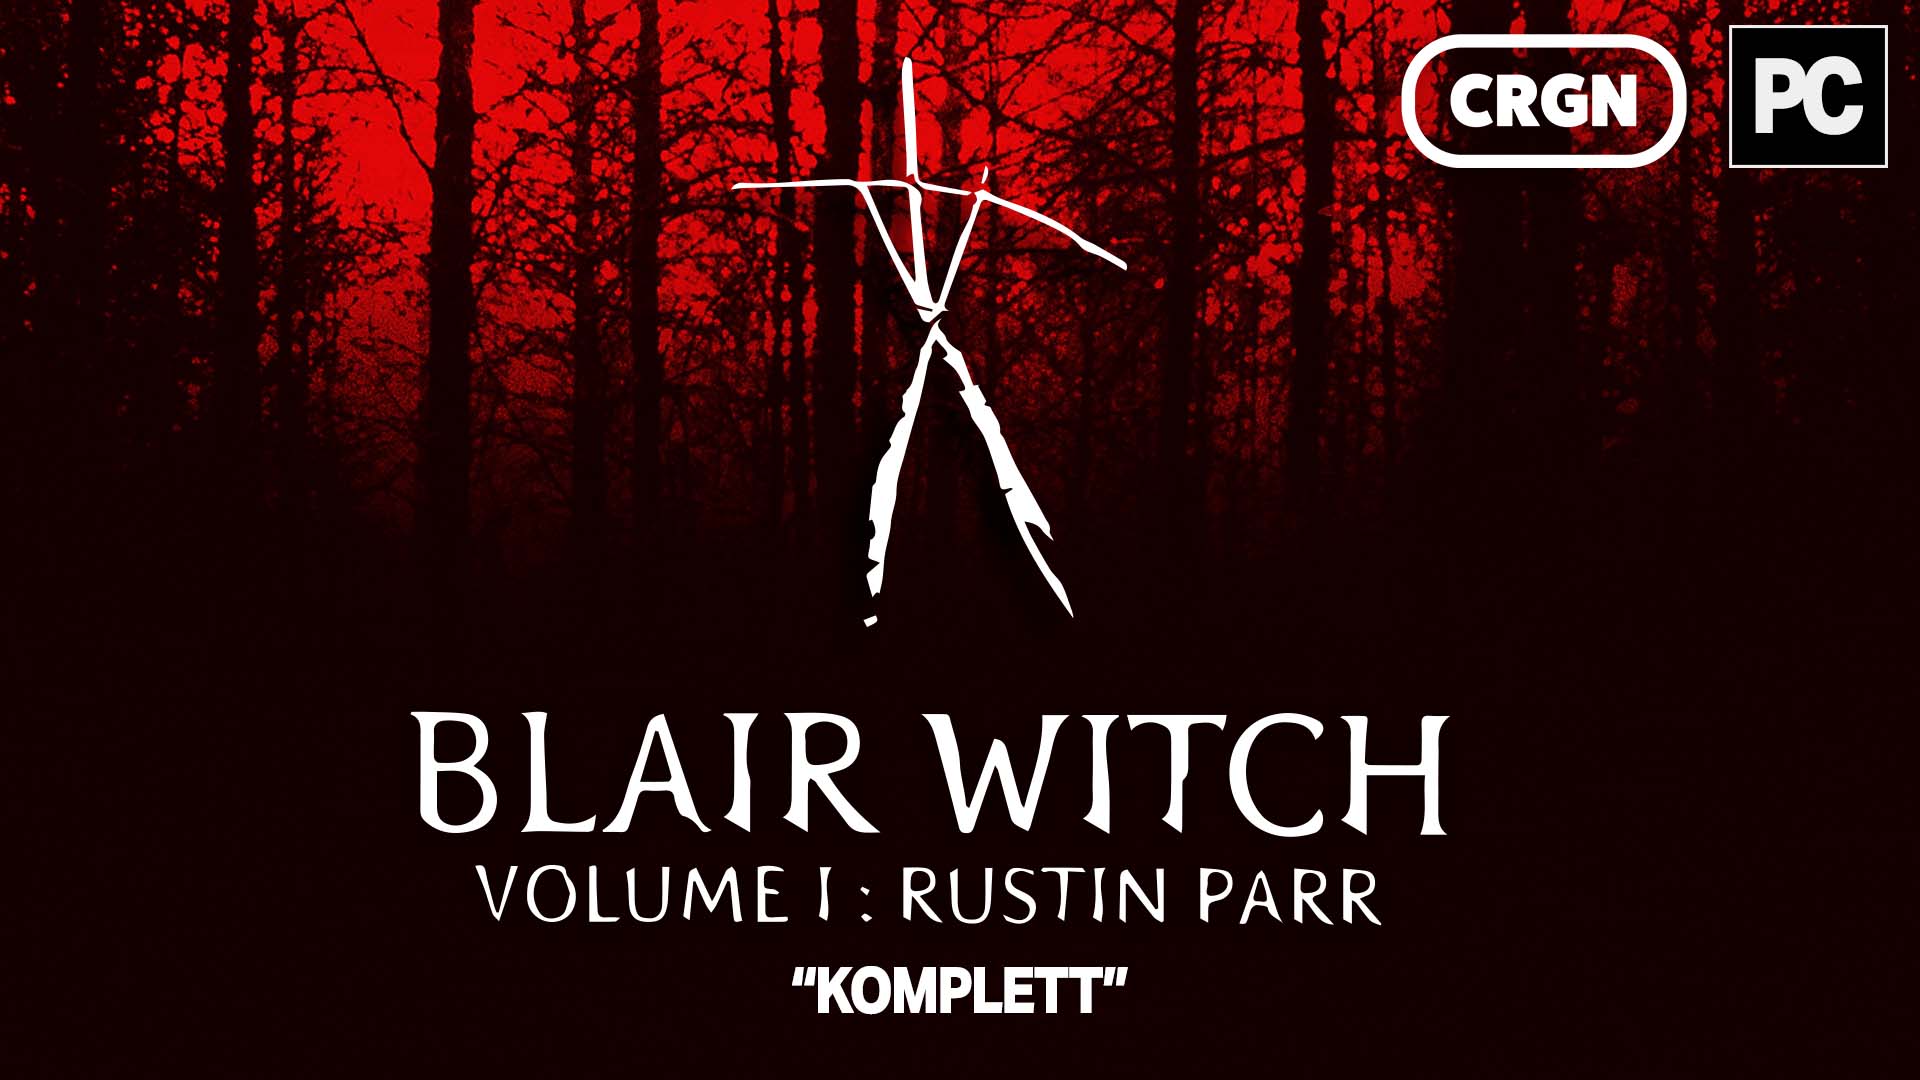 Blair Witch Volume 1 Rustin Parr - Titelbild - Angespielt